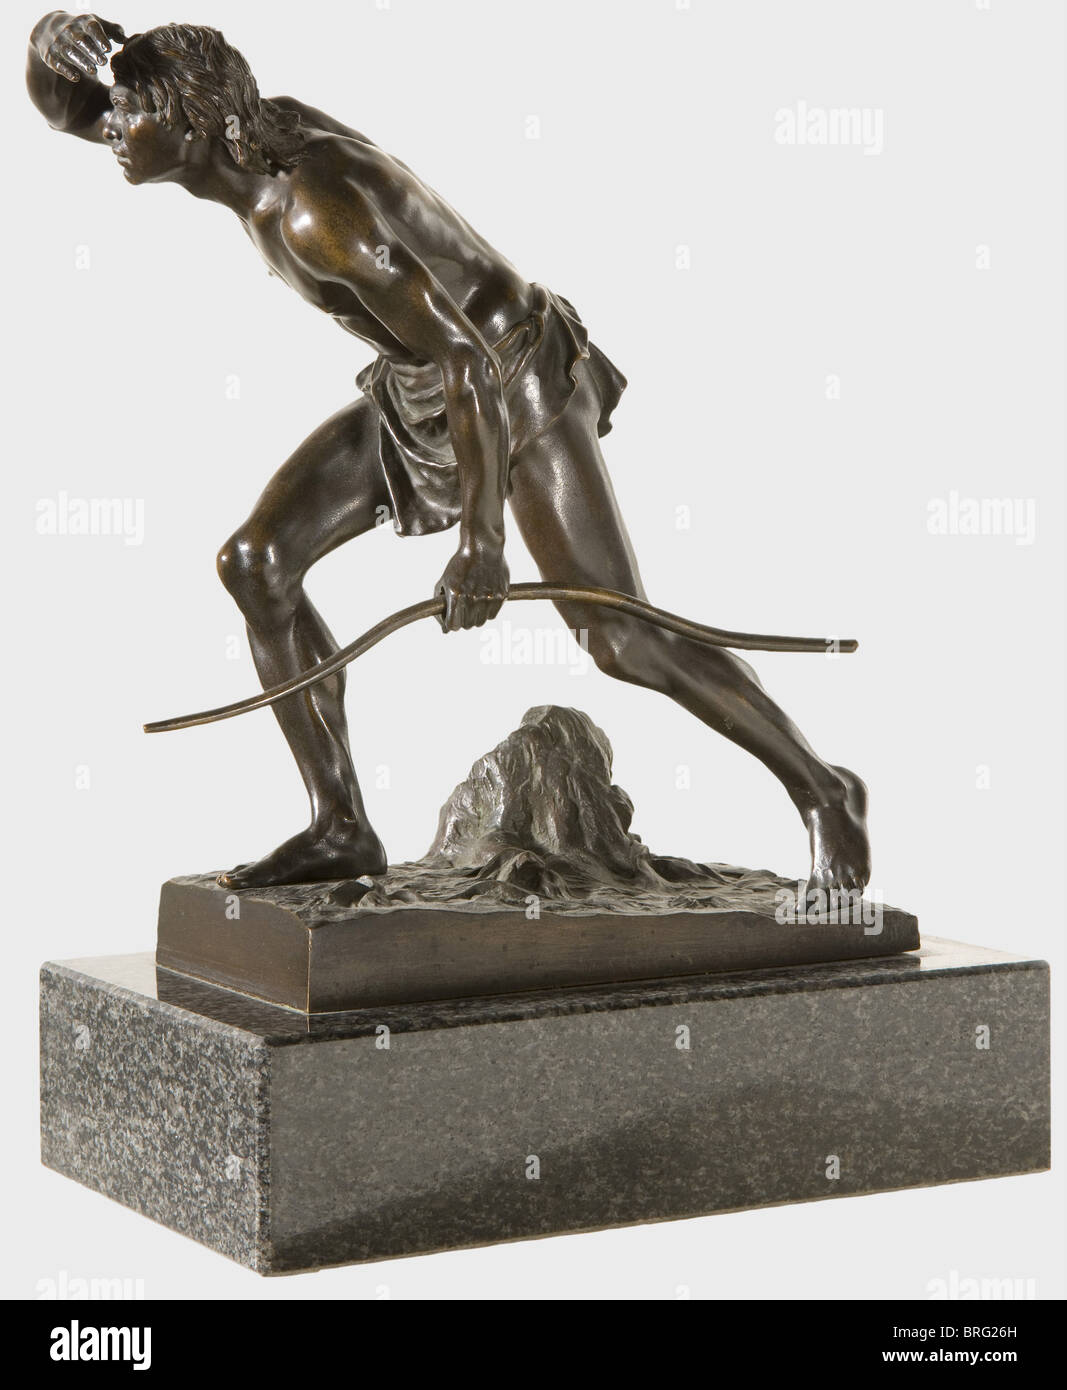 Drischler Joseph (1838 - 1917) - un chasseur préhistorique., bronze patiné,  chasseur préhistorique avec pagne, tenant un arc dans sa main et à la  partie. Sur une base rectangulaire, inscrit 'J. Drischler",